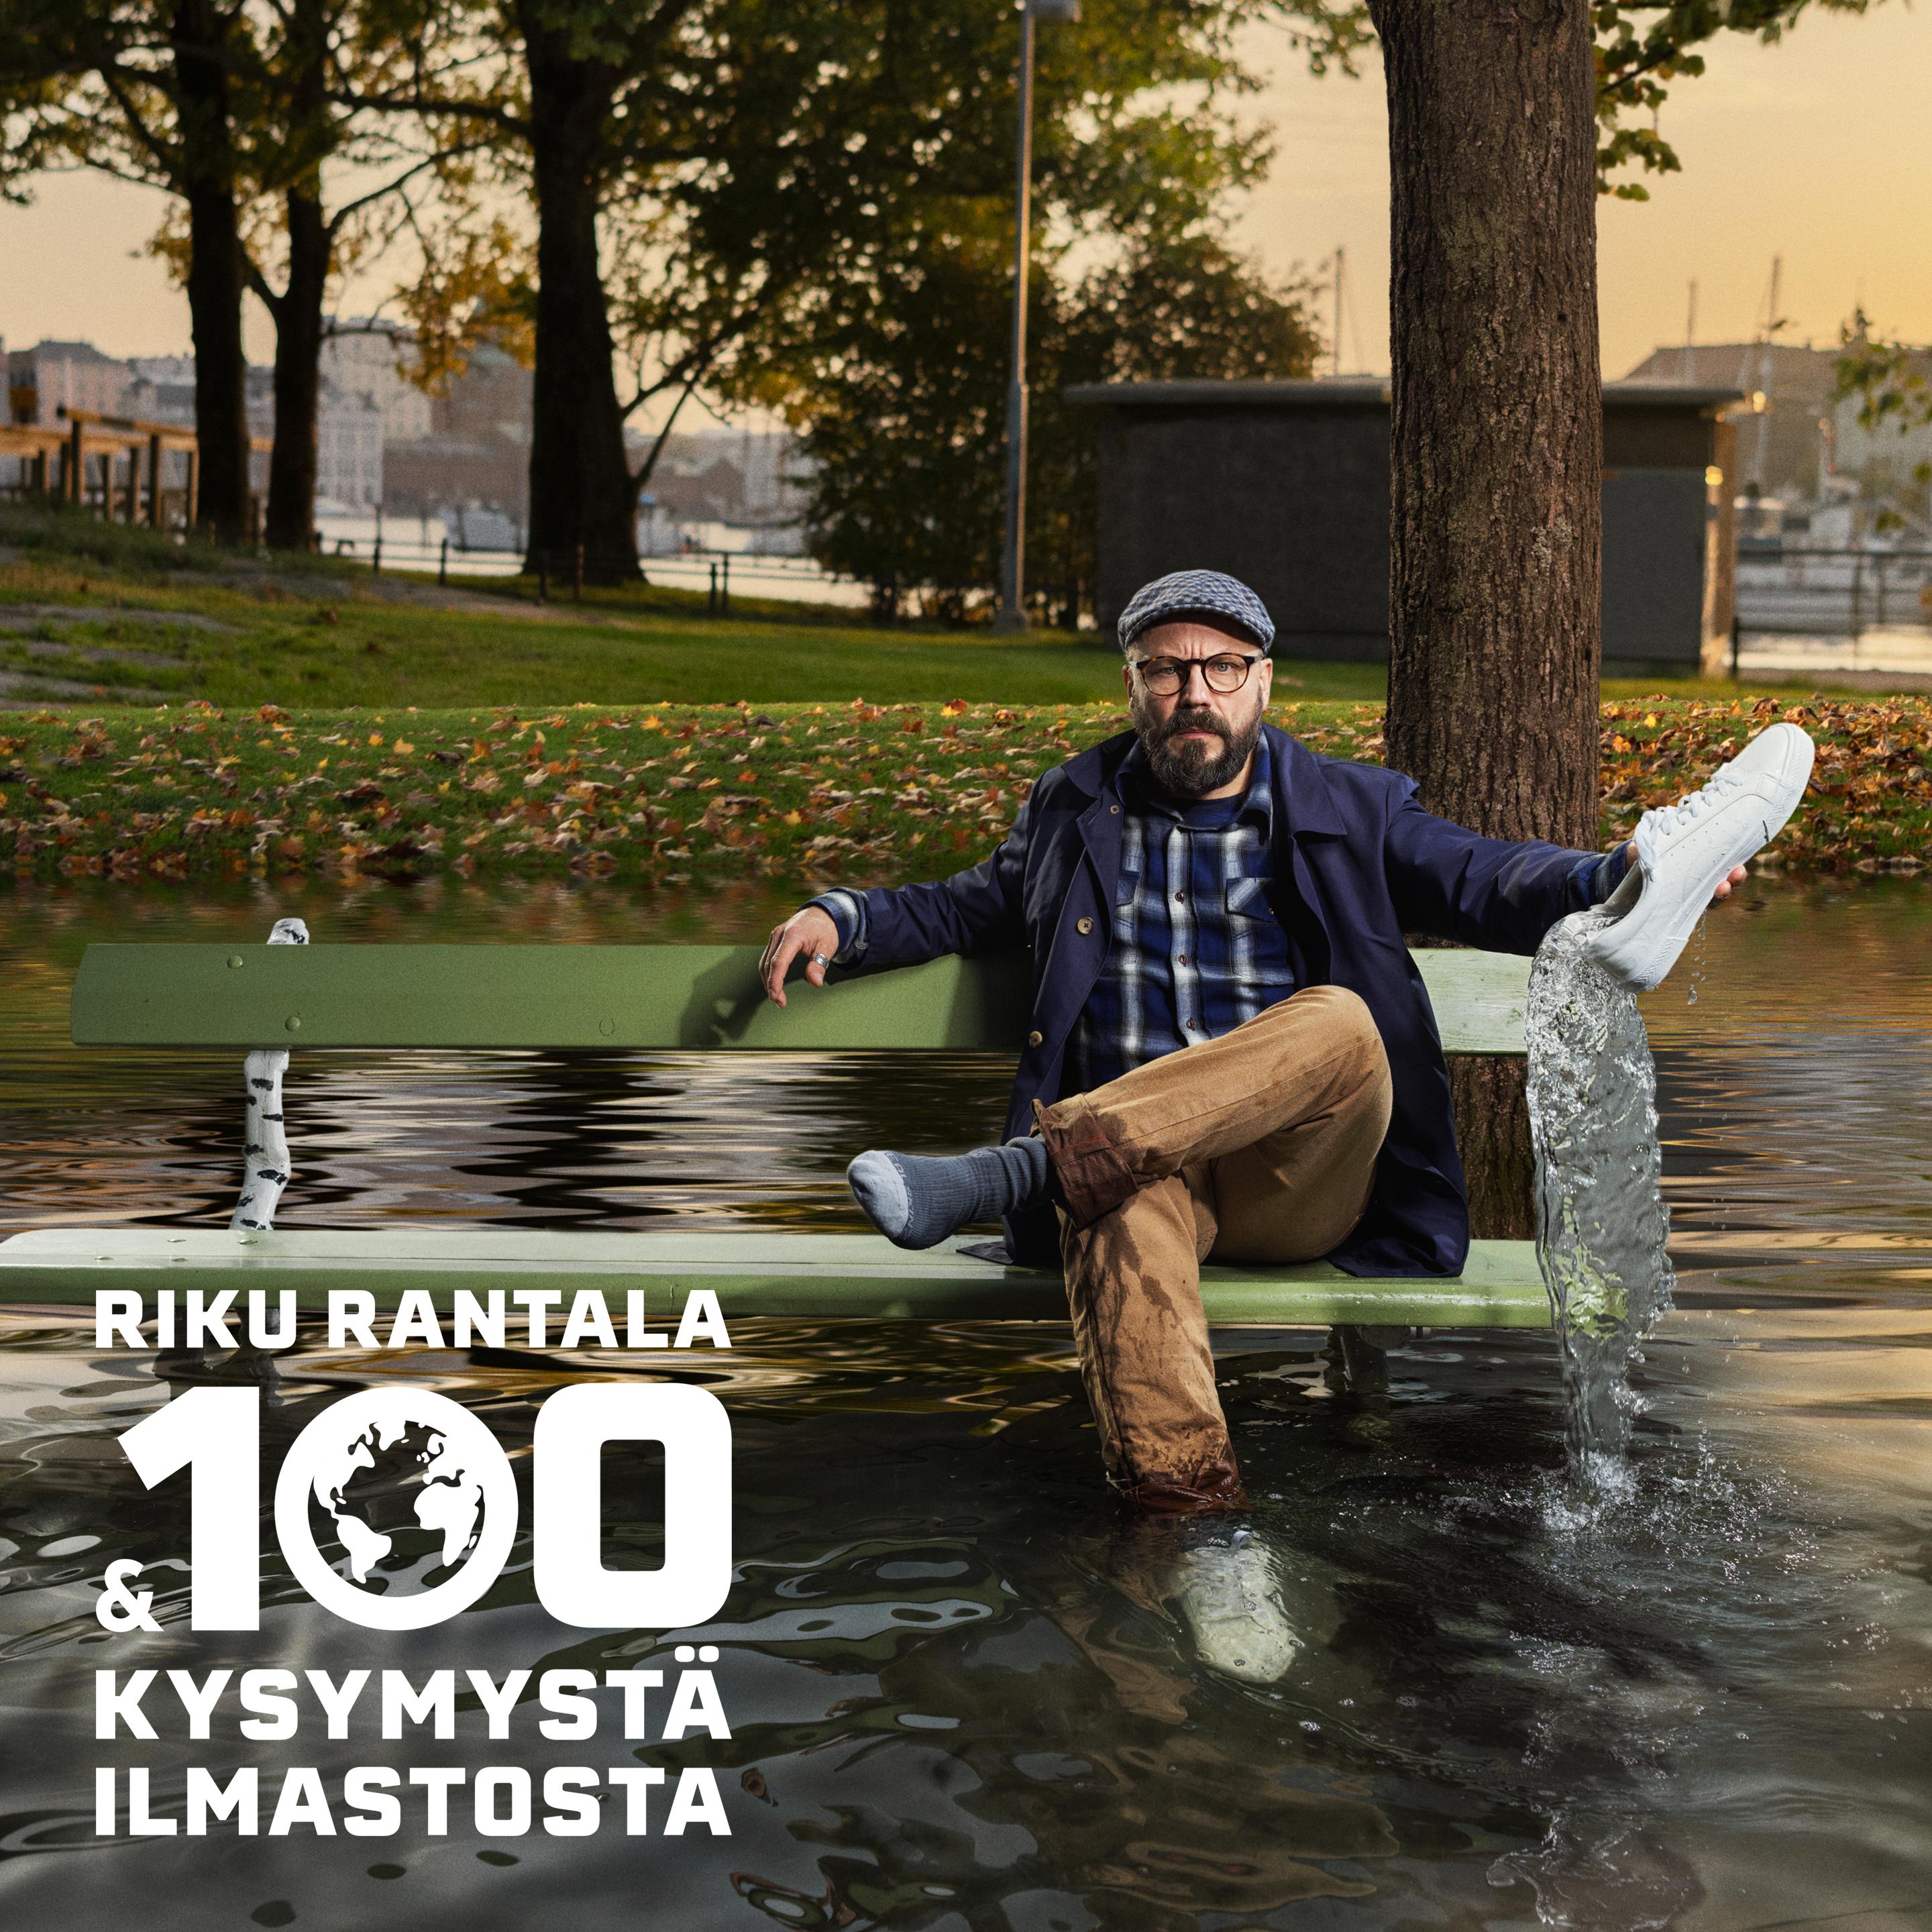 Riku Rantala & 100 kysymystä ilmastosta - Koko keskustelu - podcast